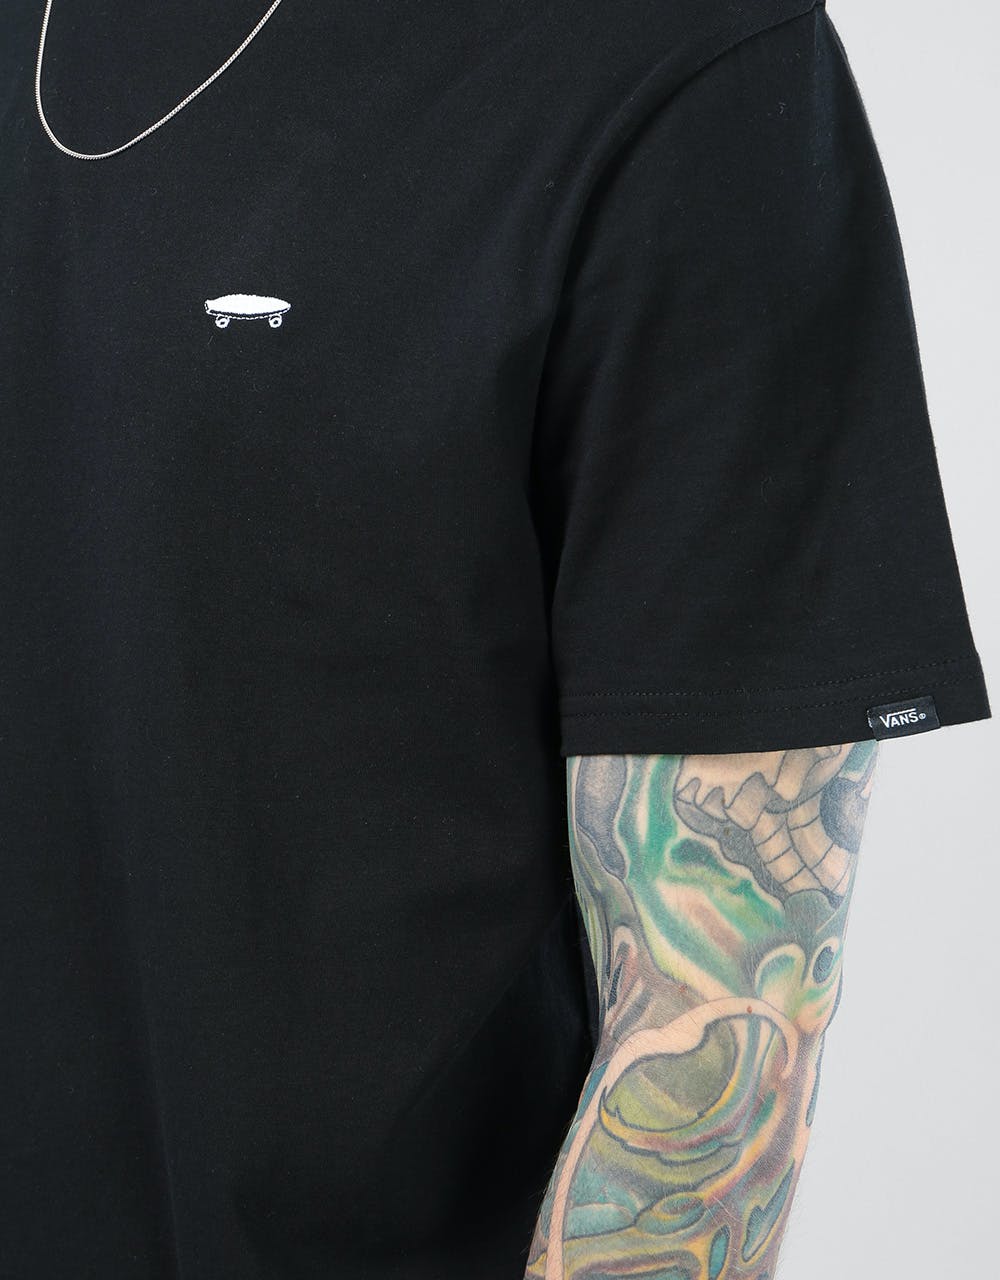 Vans Skate T-Shirt - Black